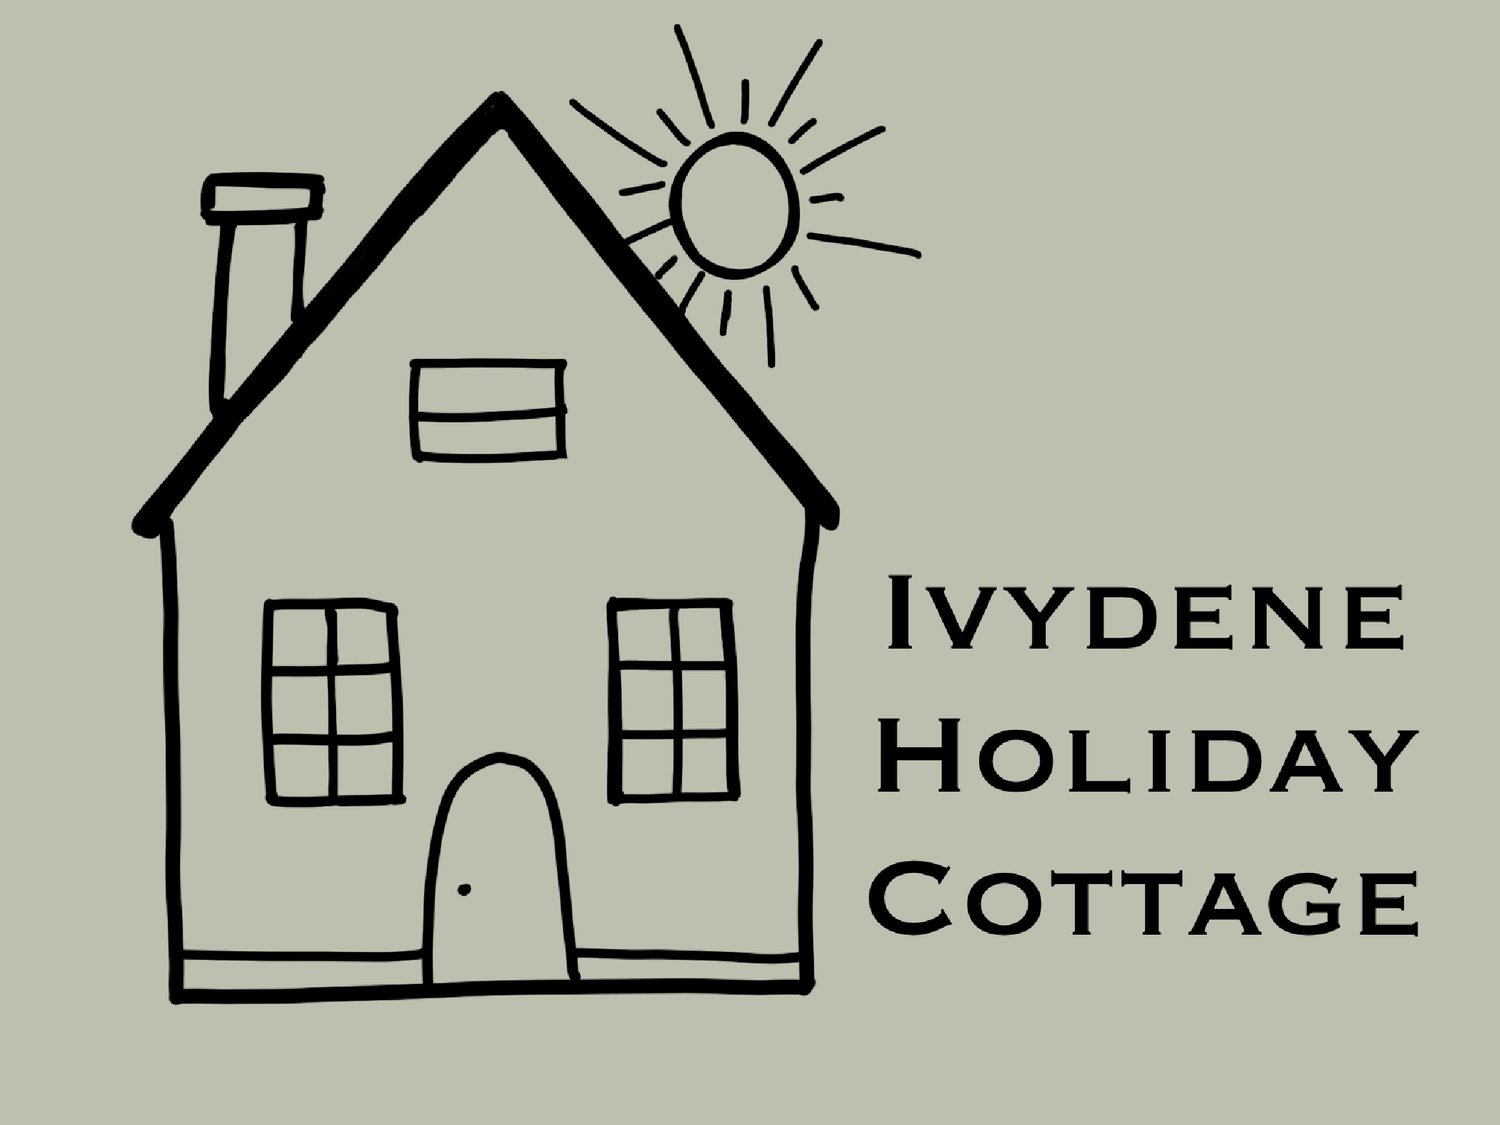 Ivydene Holiday Cottage